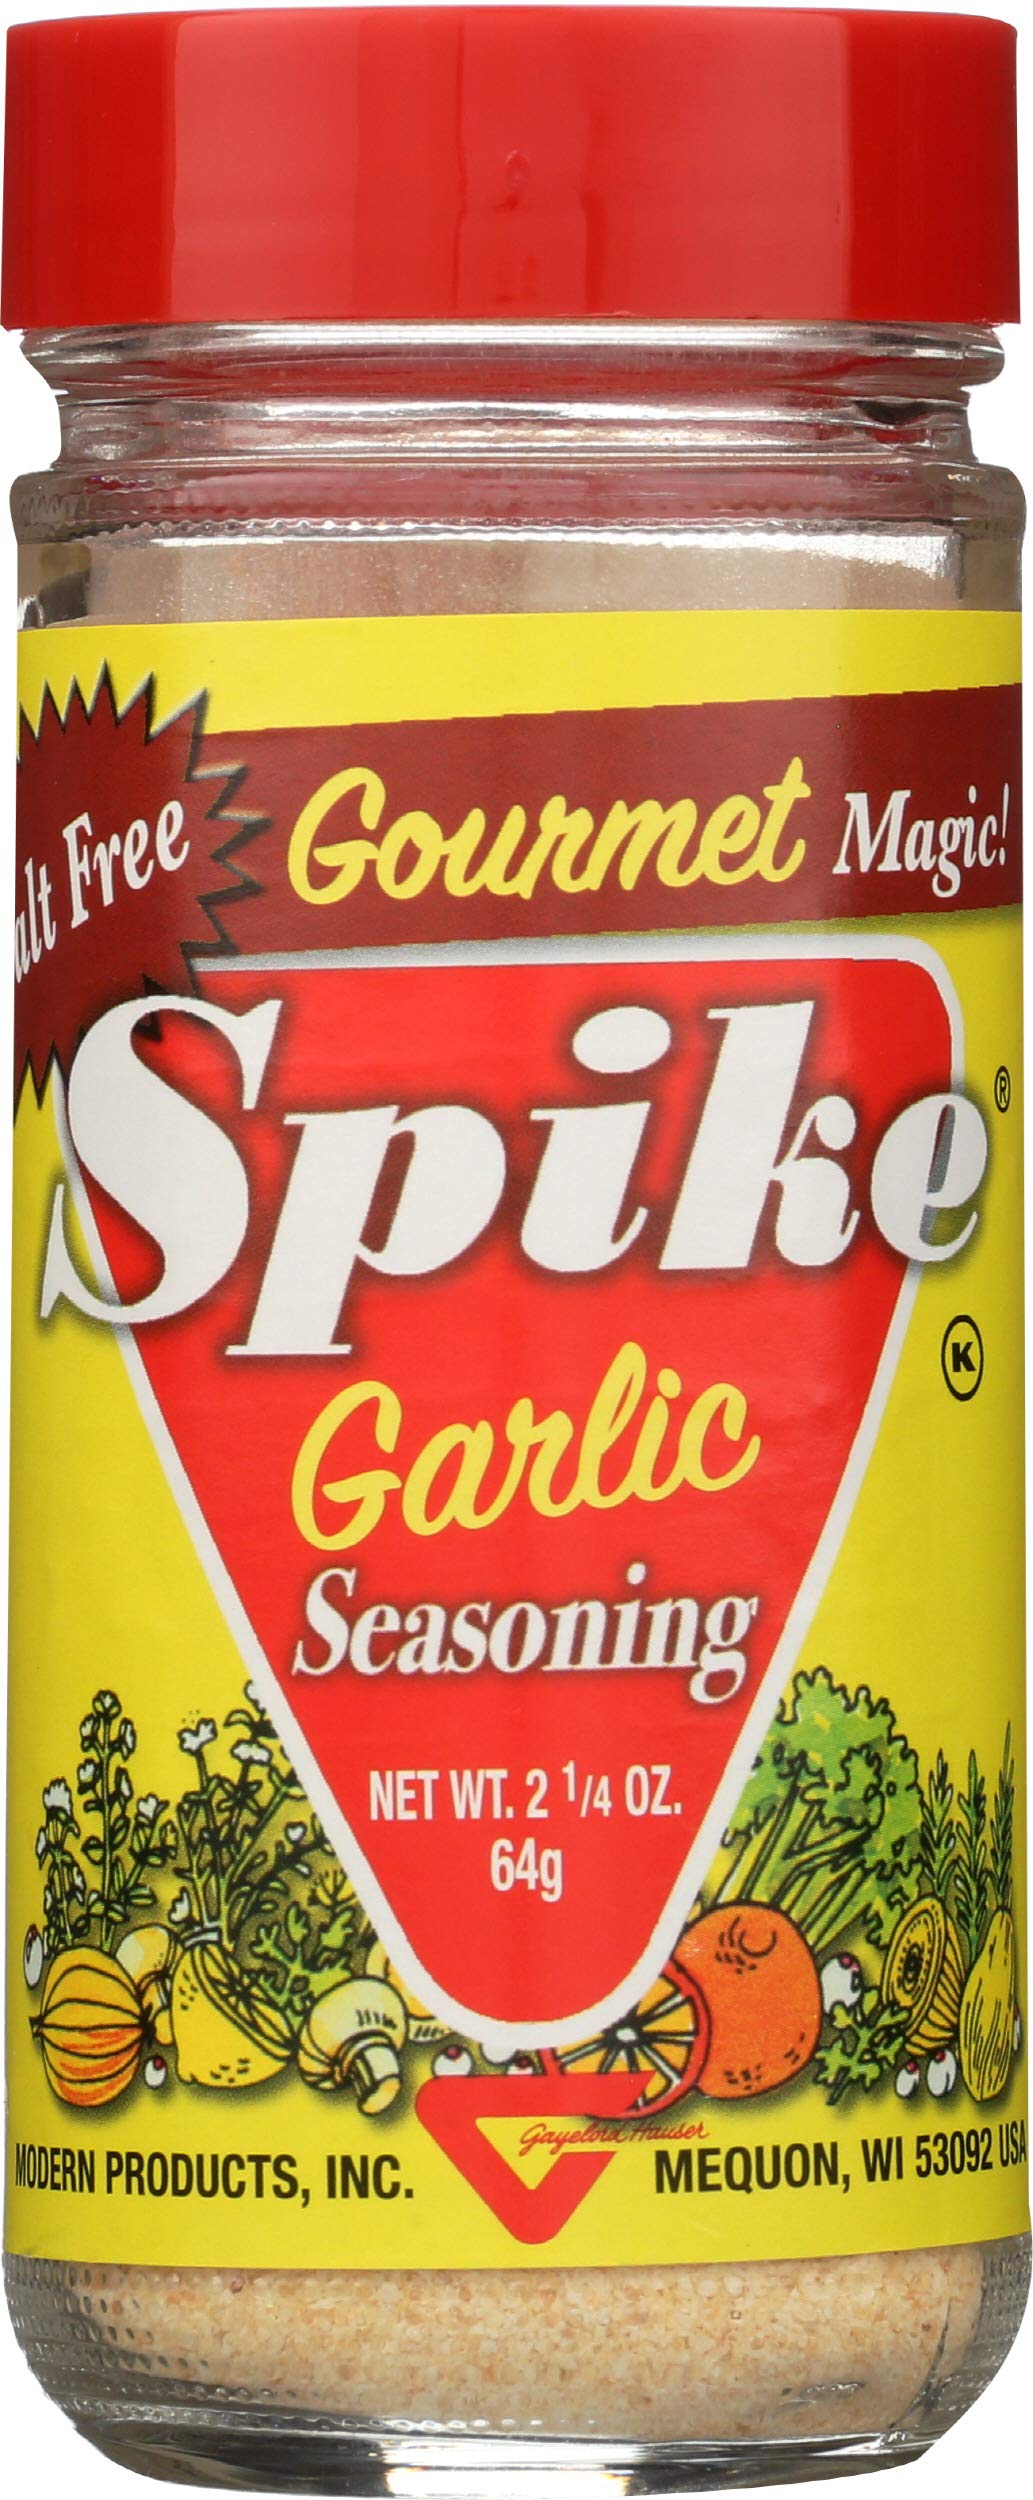 Spike Gourmet Natural Seasoning Salt Free Magic! - Spices & Seasonings